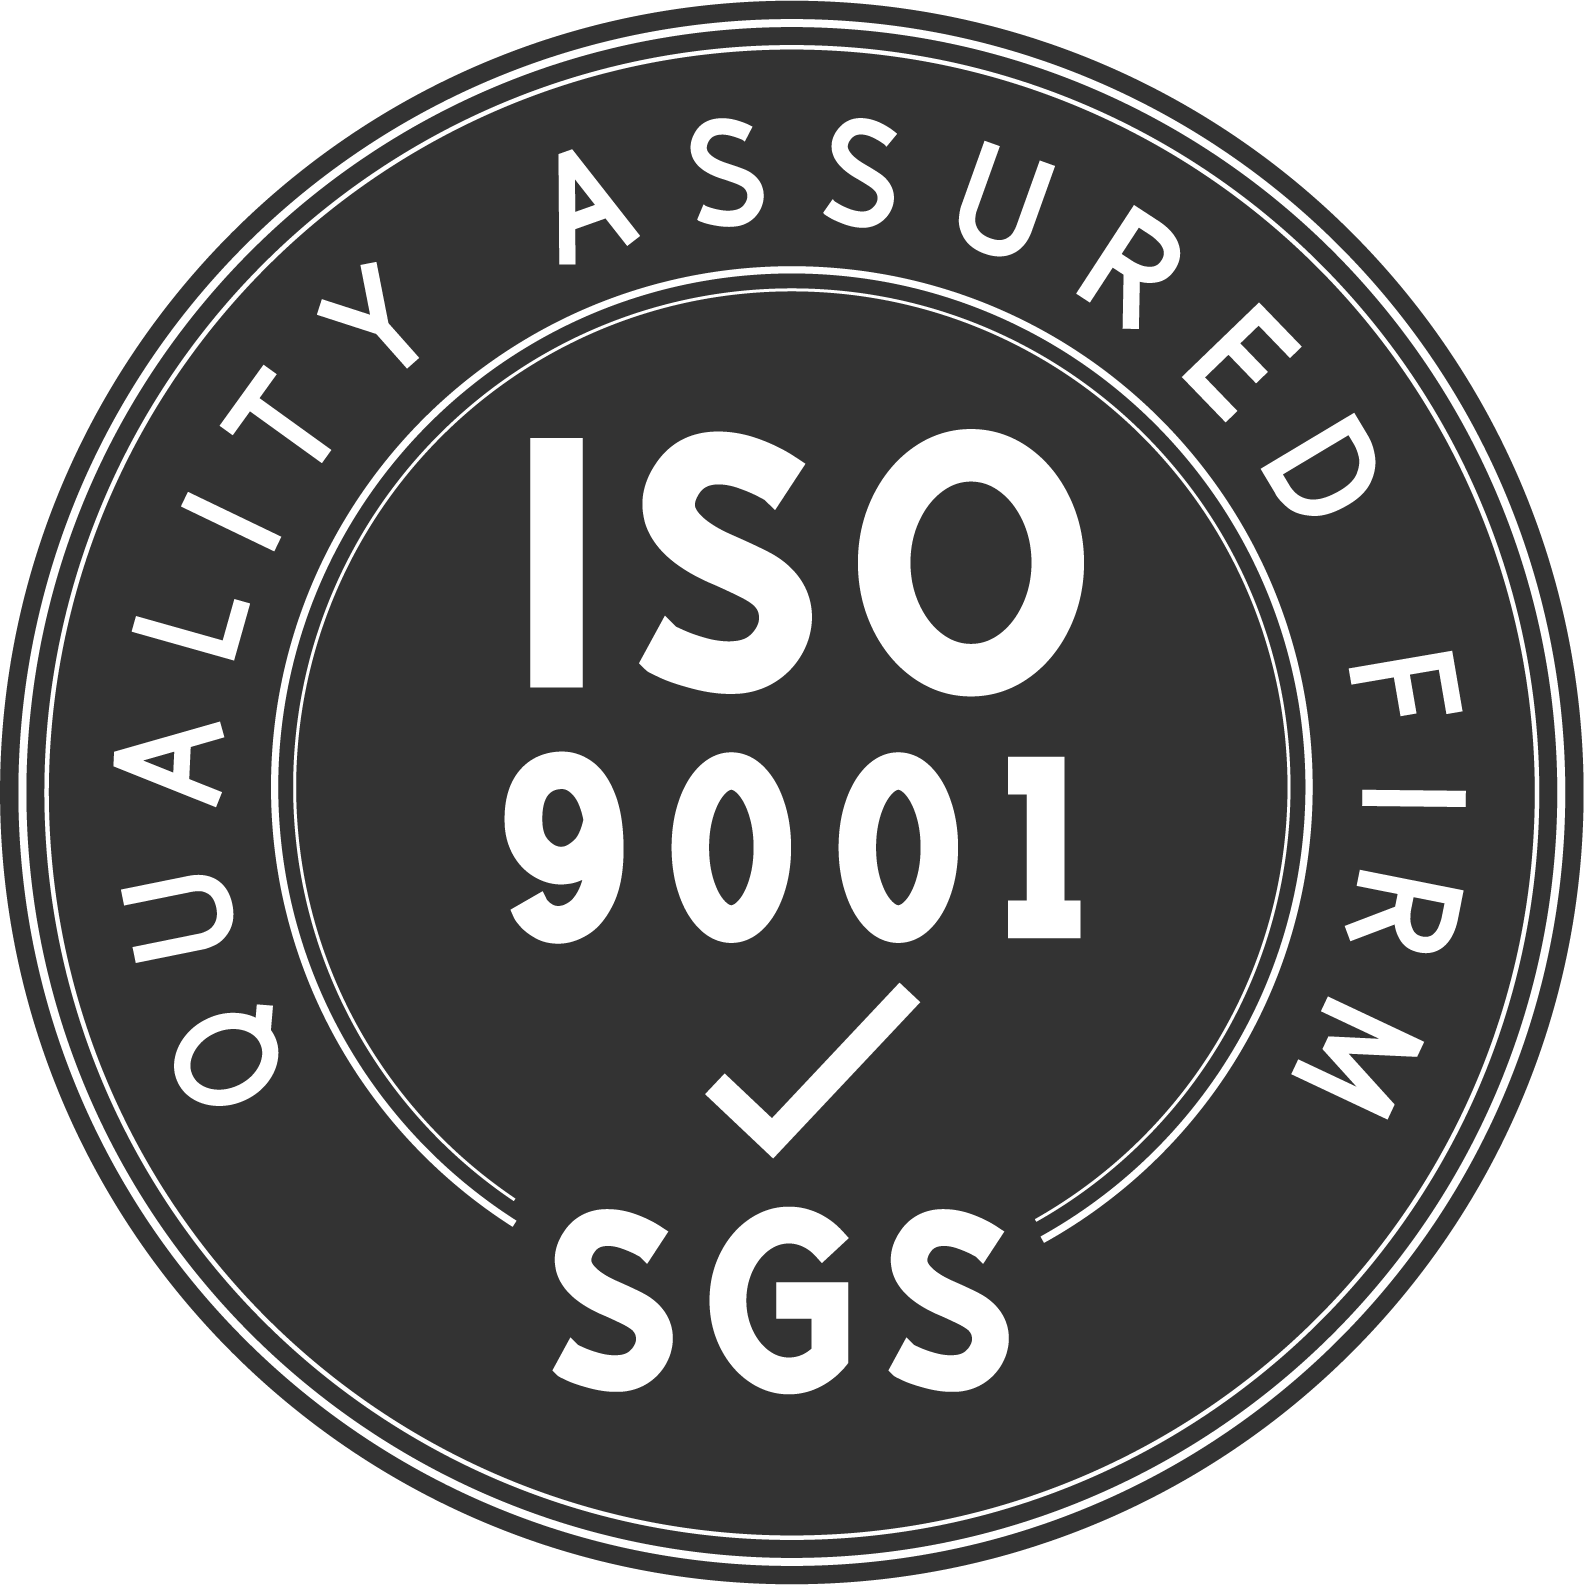 Το εργοστάσιό μας είναι πιστοποιημένο κατά ISO9001:2005 κατασκευαστής προϊόντων υψηλής ποιότητας